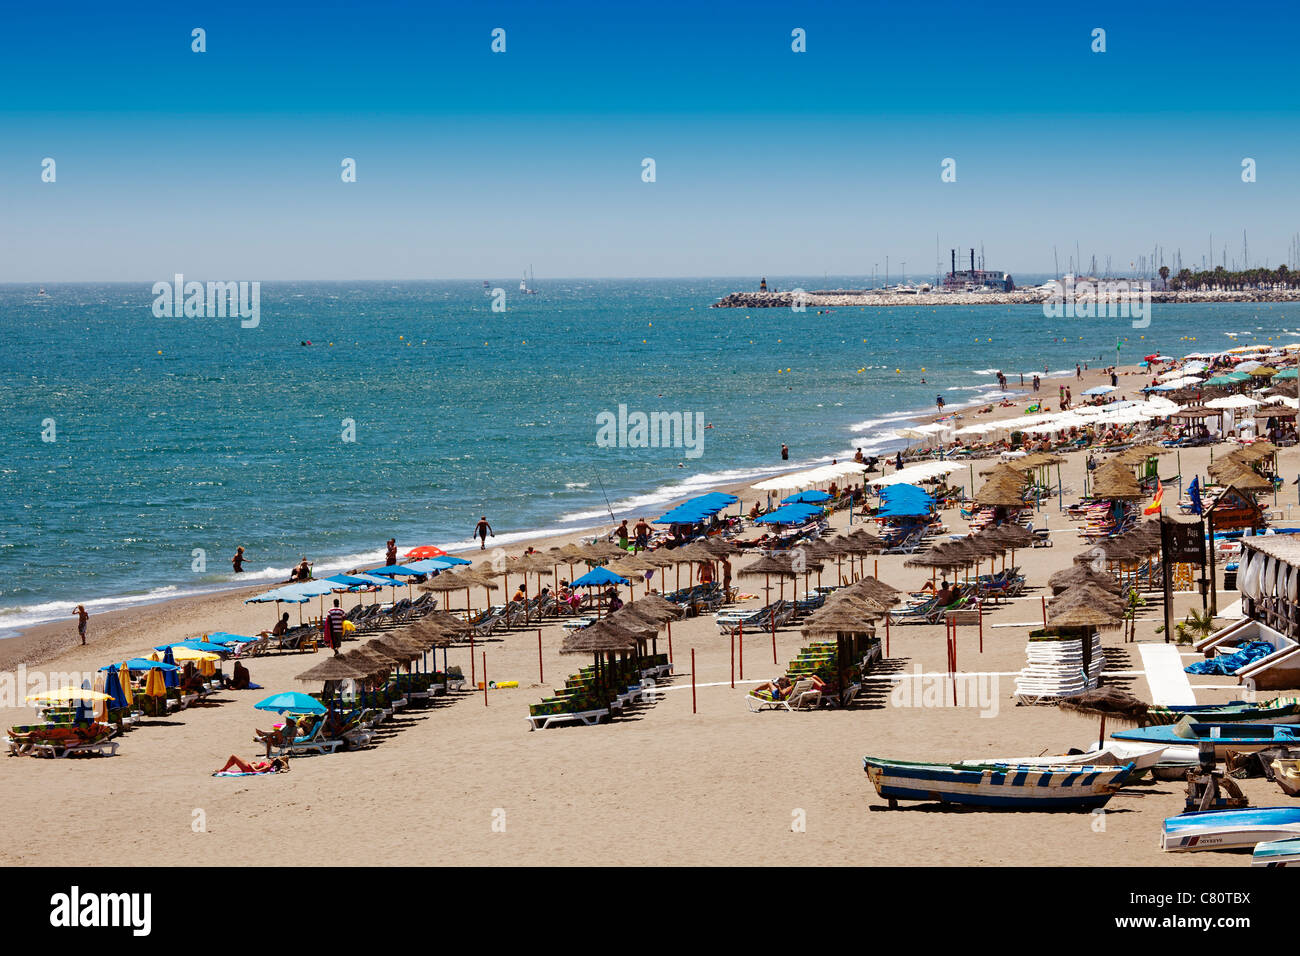 La plage de la Carihuela Torremolinos Malaga Costa del Sol Andalousie Espagne Banque D'Images